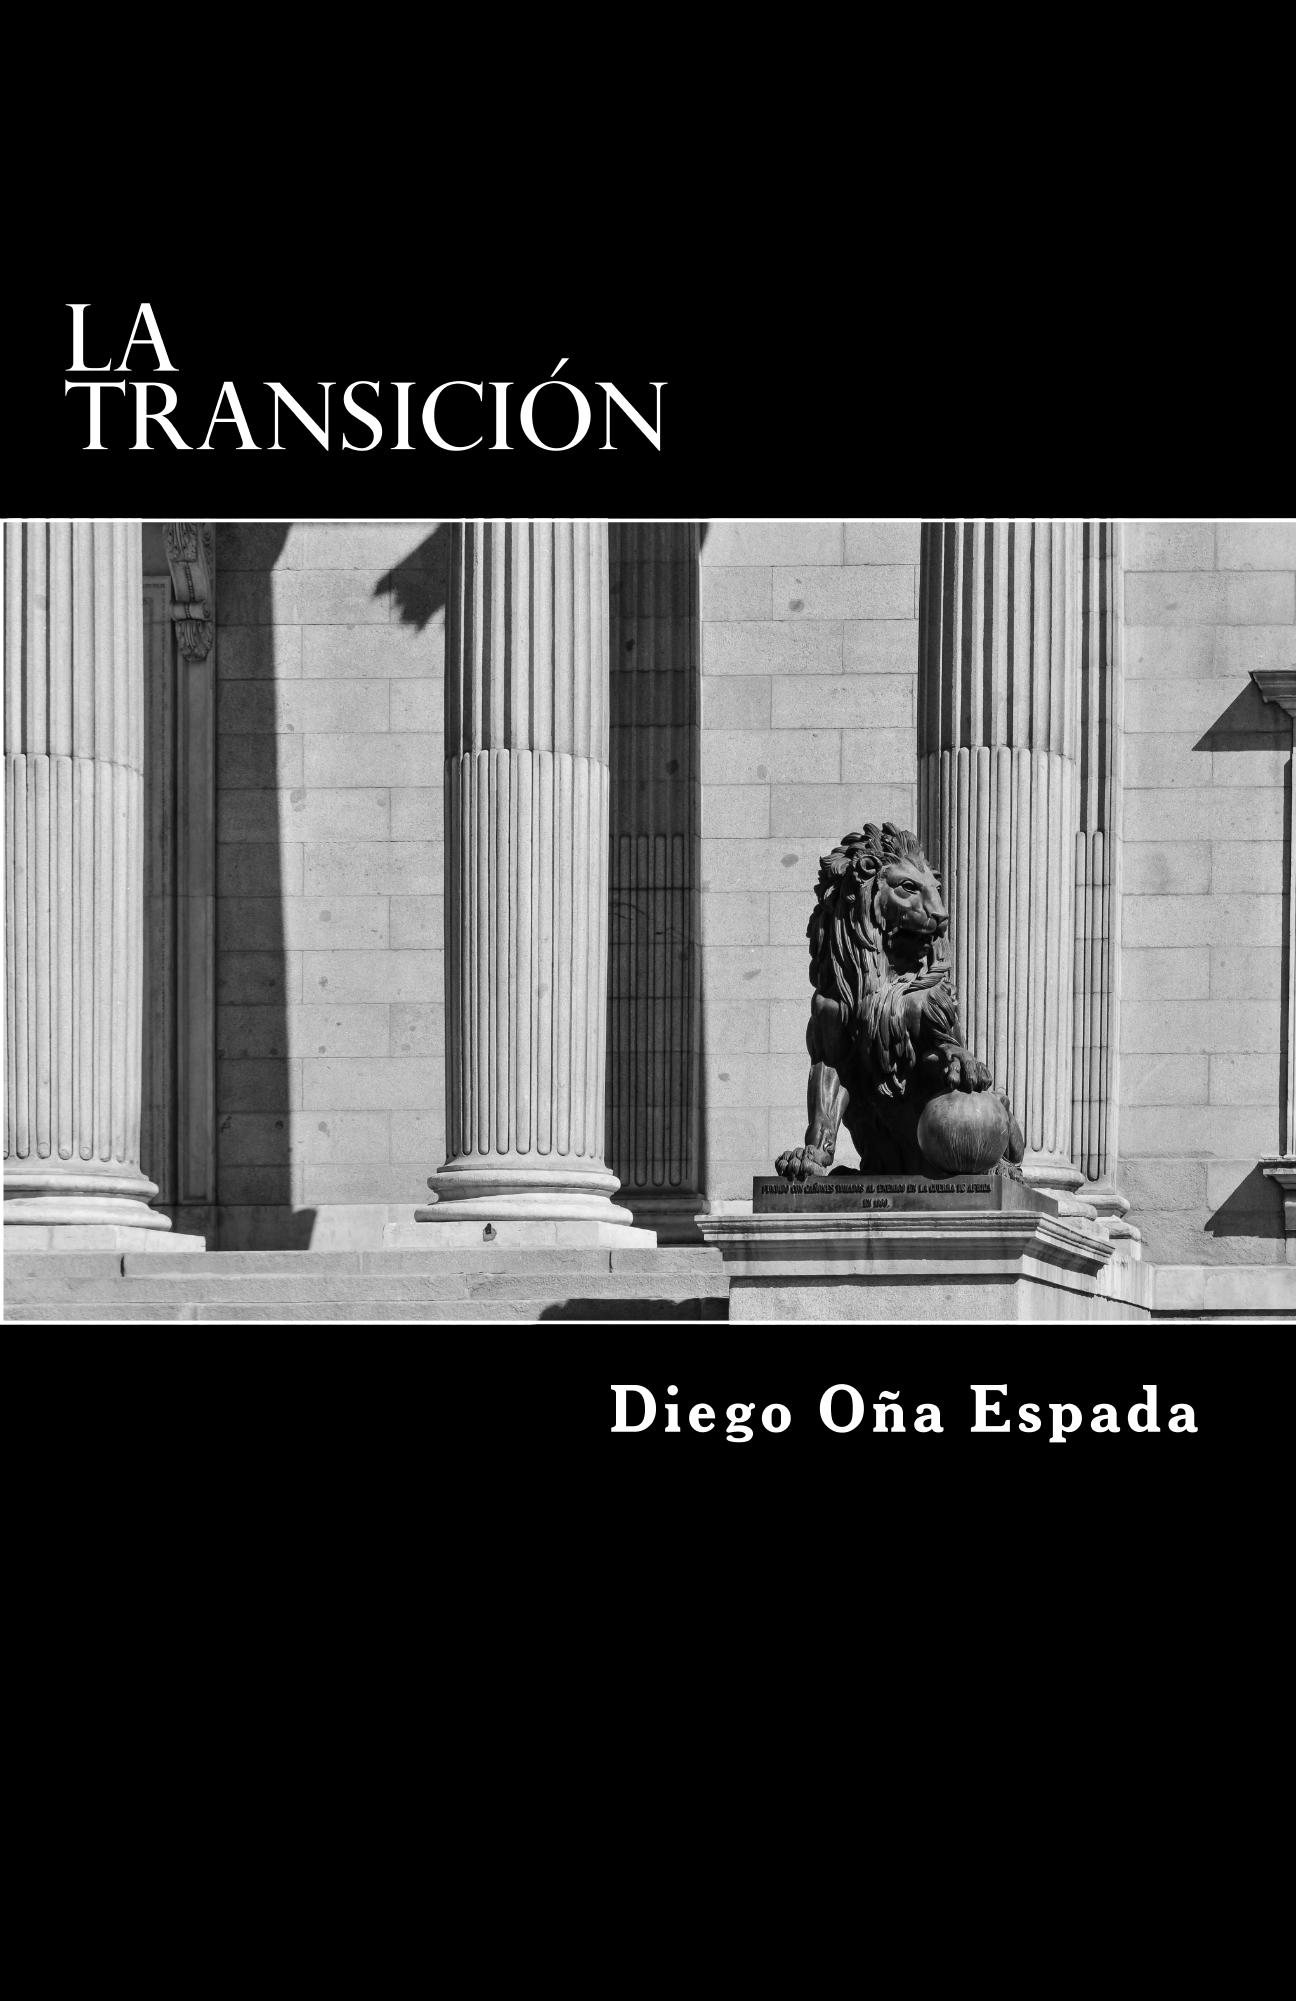 Libro La Transición disponible en Amazon